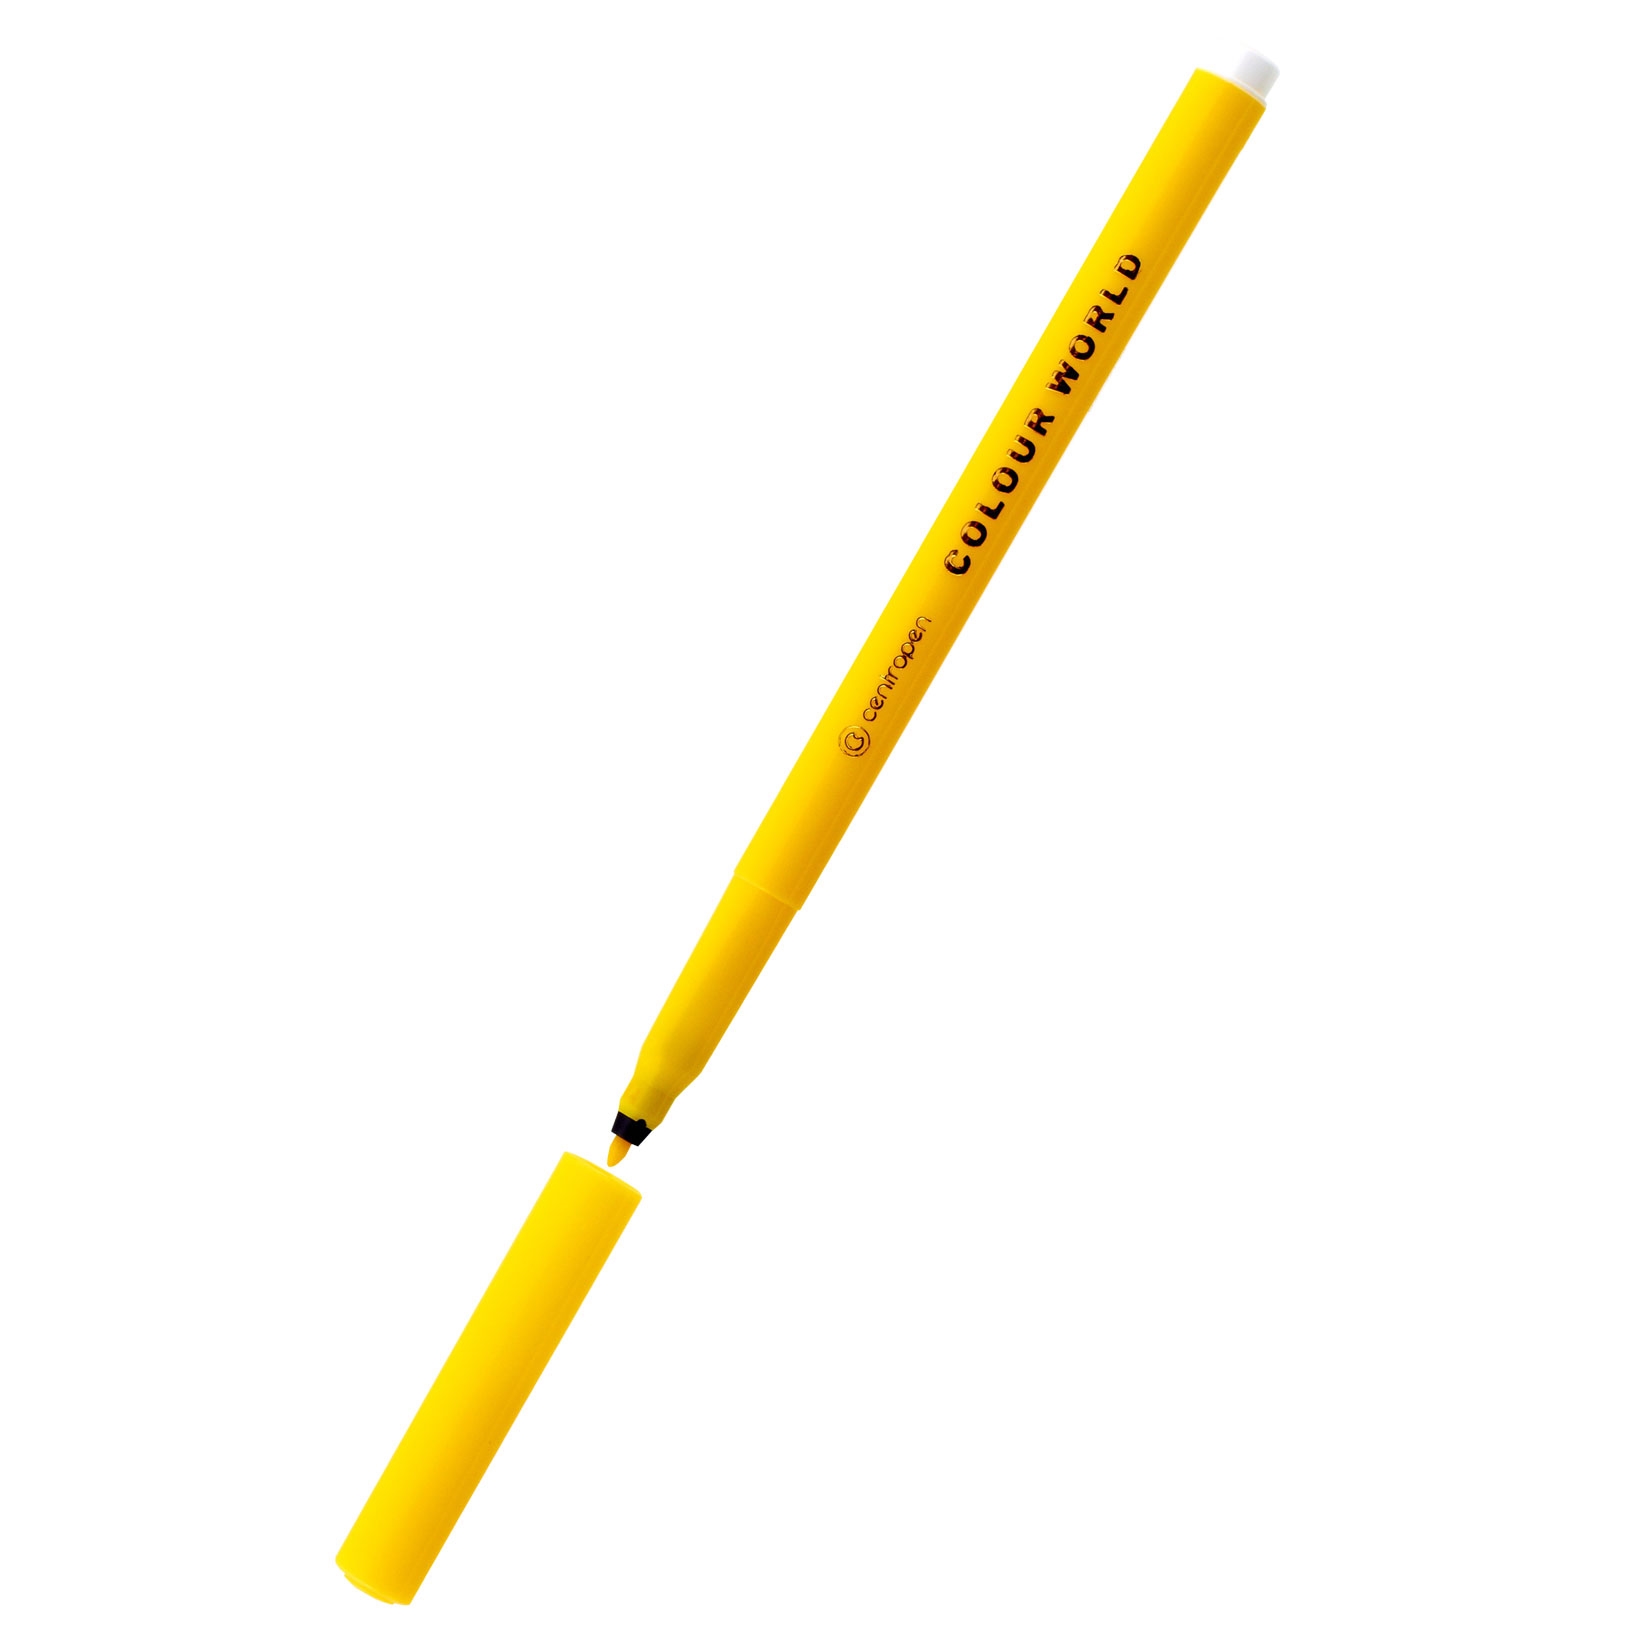 Popisovač Centropen 7550 vypratelné, 1 mm, žlutý